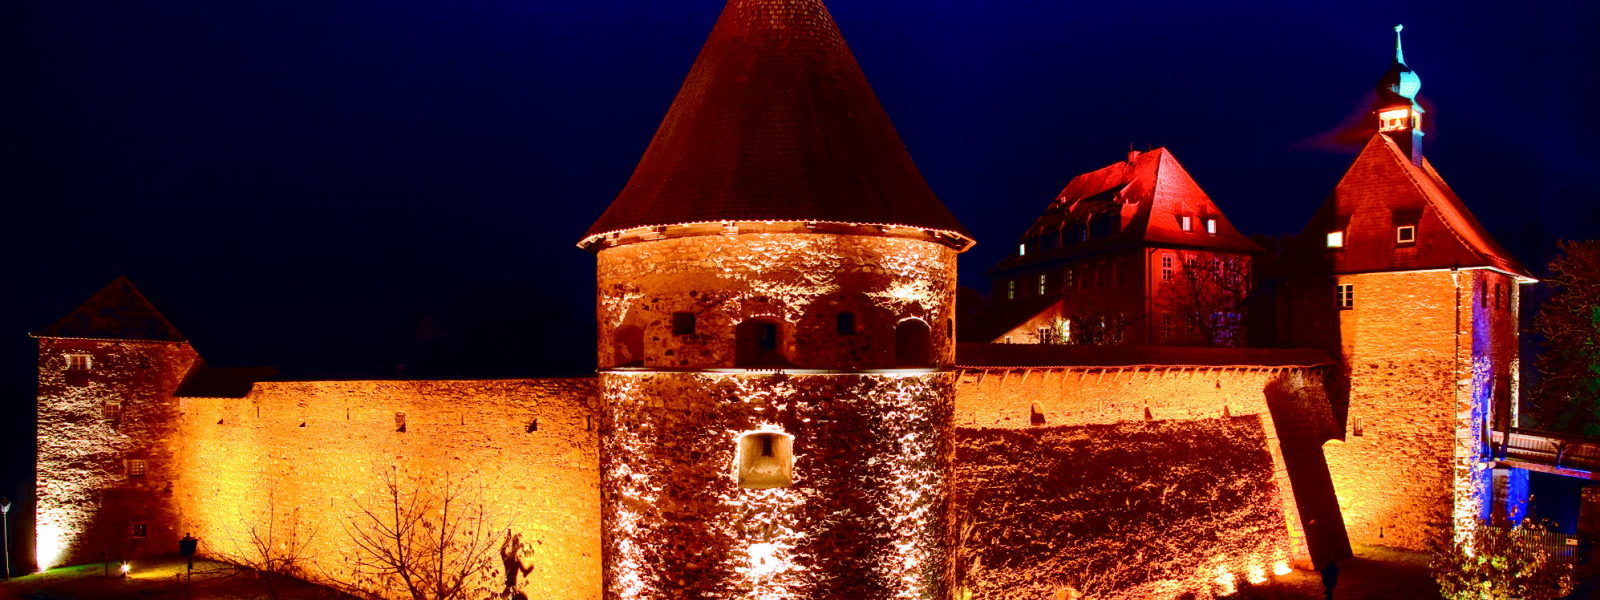 Burg Hohenberg, Foto Manfred Jahreiss